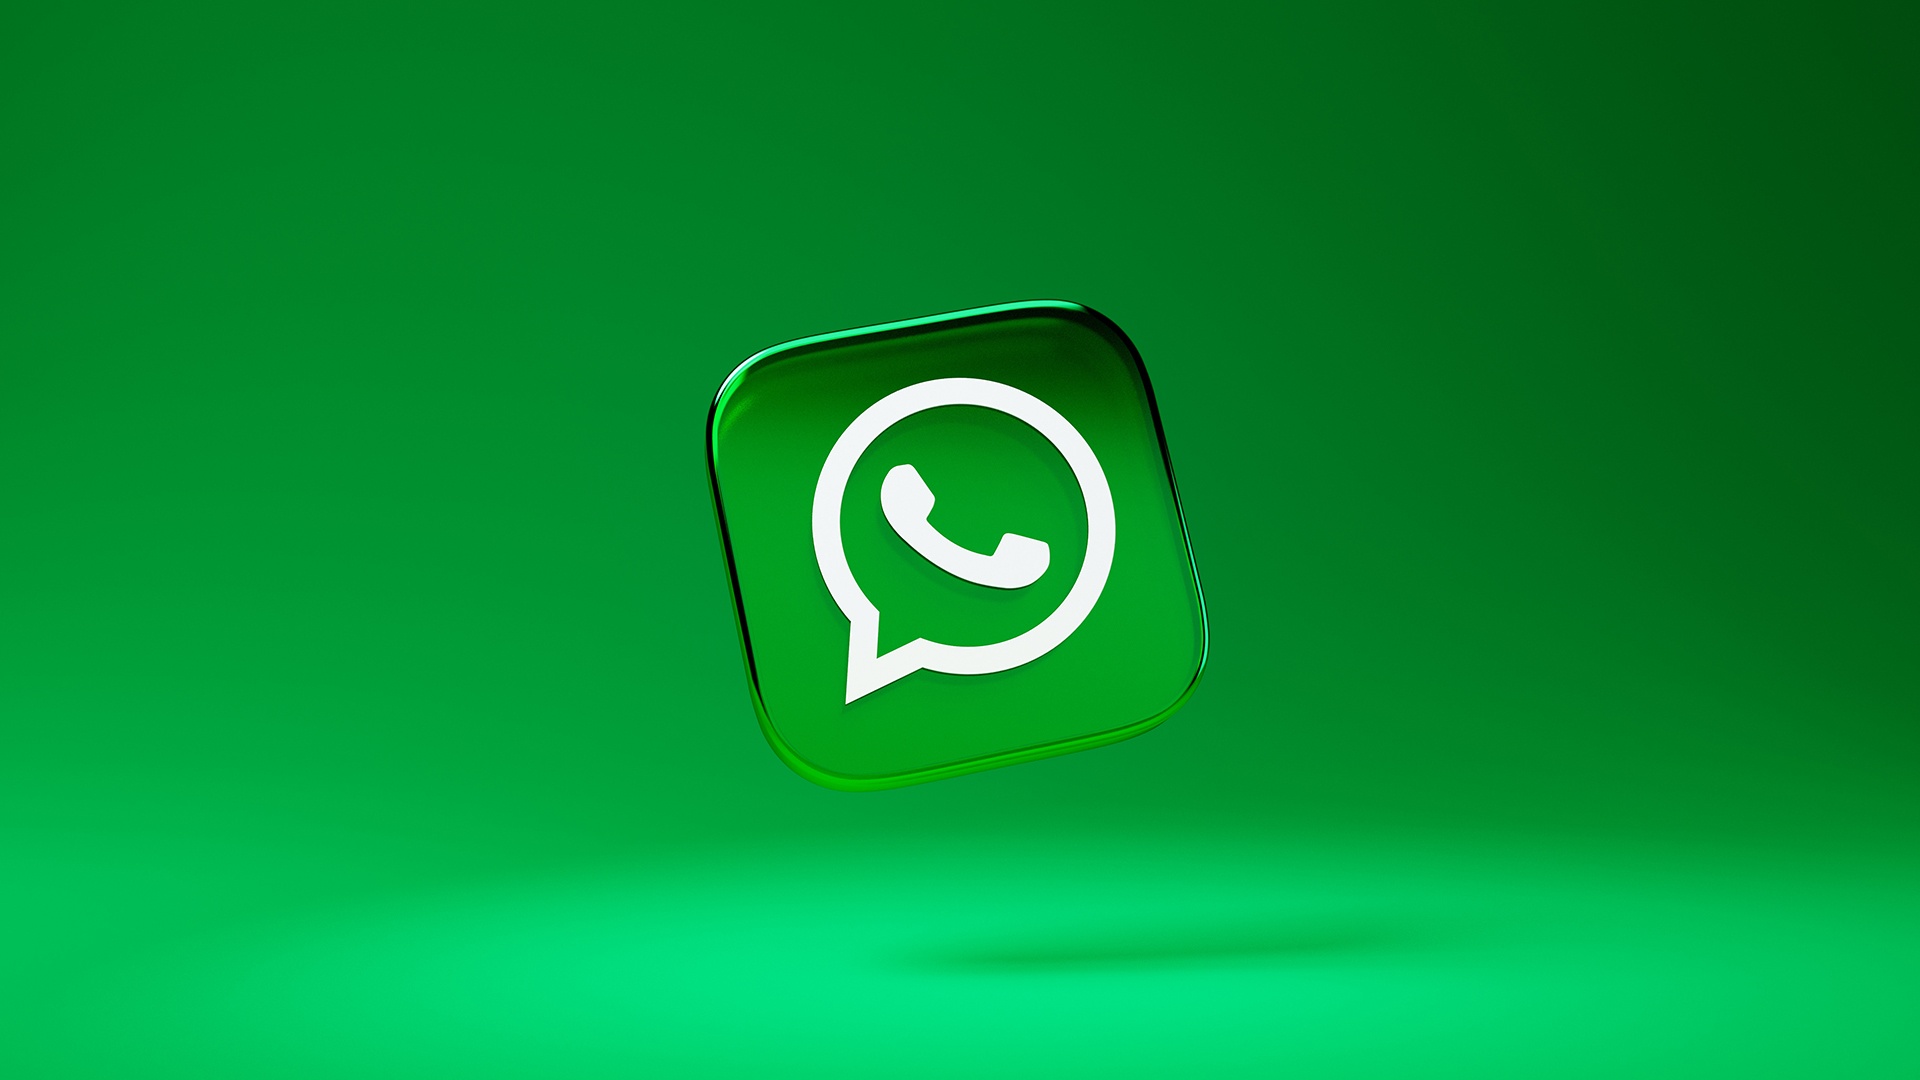 #WhatsApp: Bald könnt ihr mit einem Klick zwischen zwei Konten wechseln